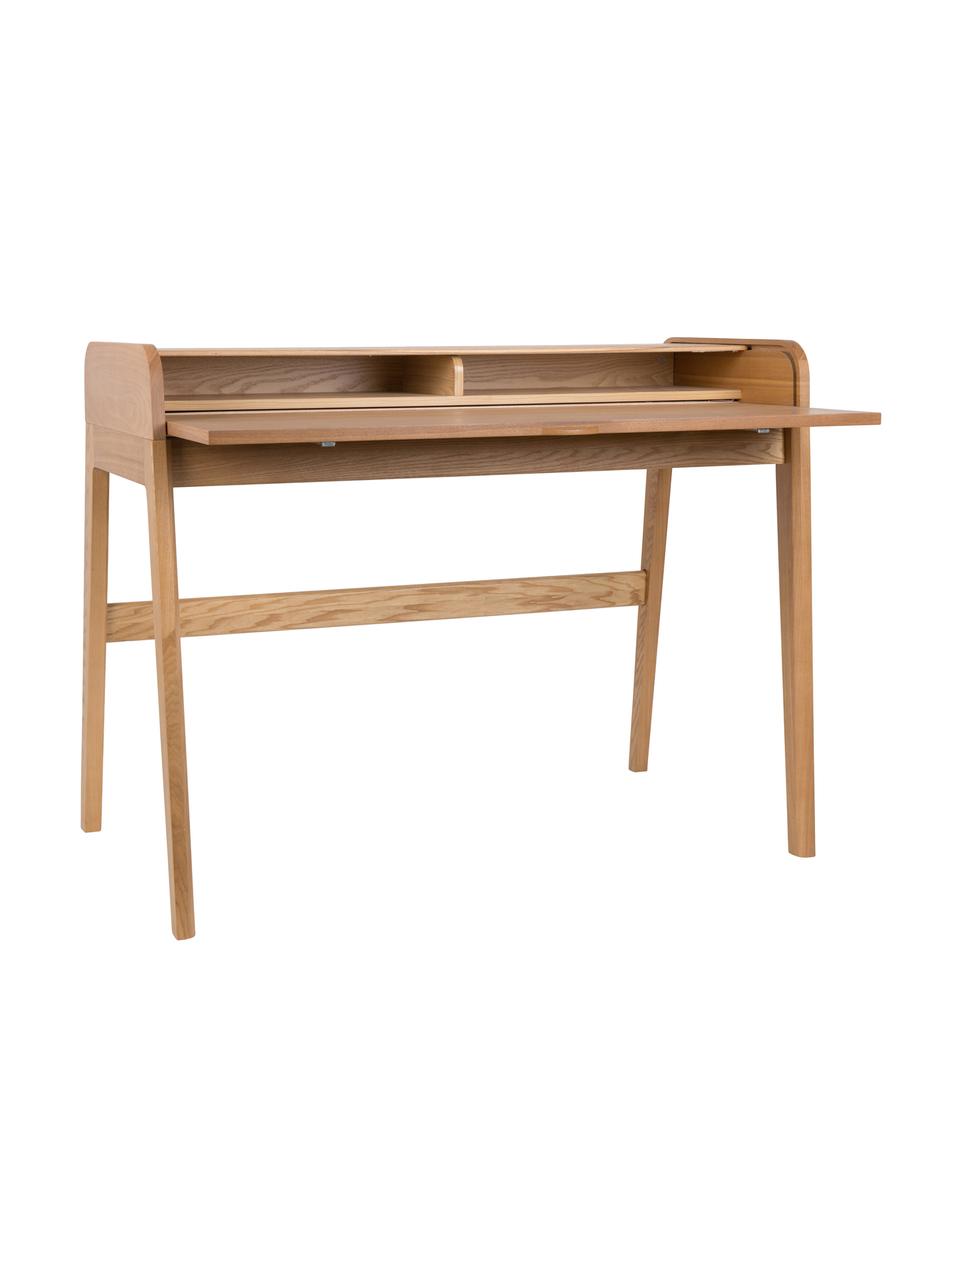 Pracovný drevený stôl s drážkovou prednou stranou Barbier, Jaseňové drevo, Š 110 x V 85 cm